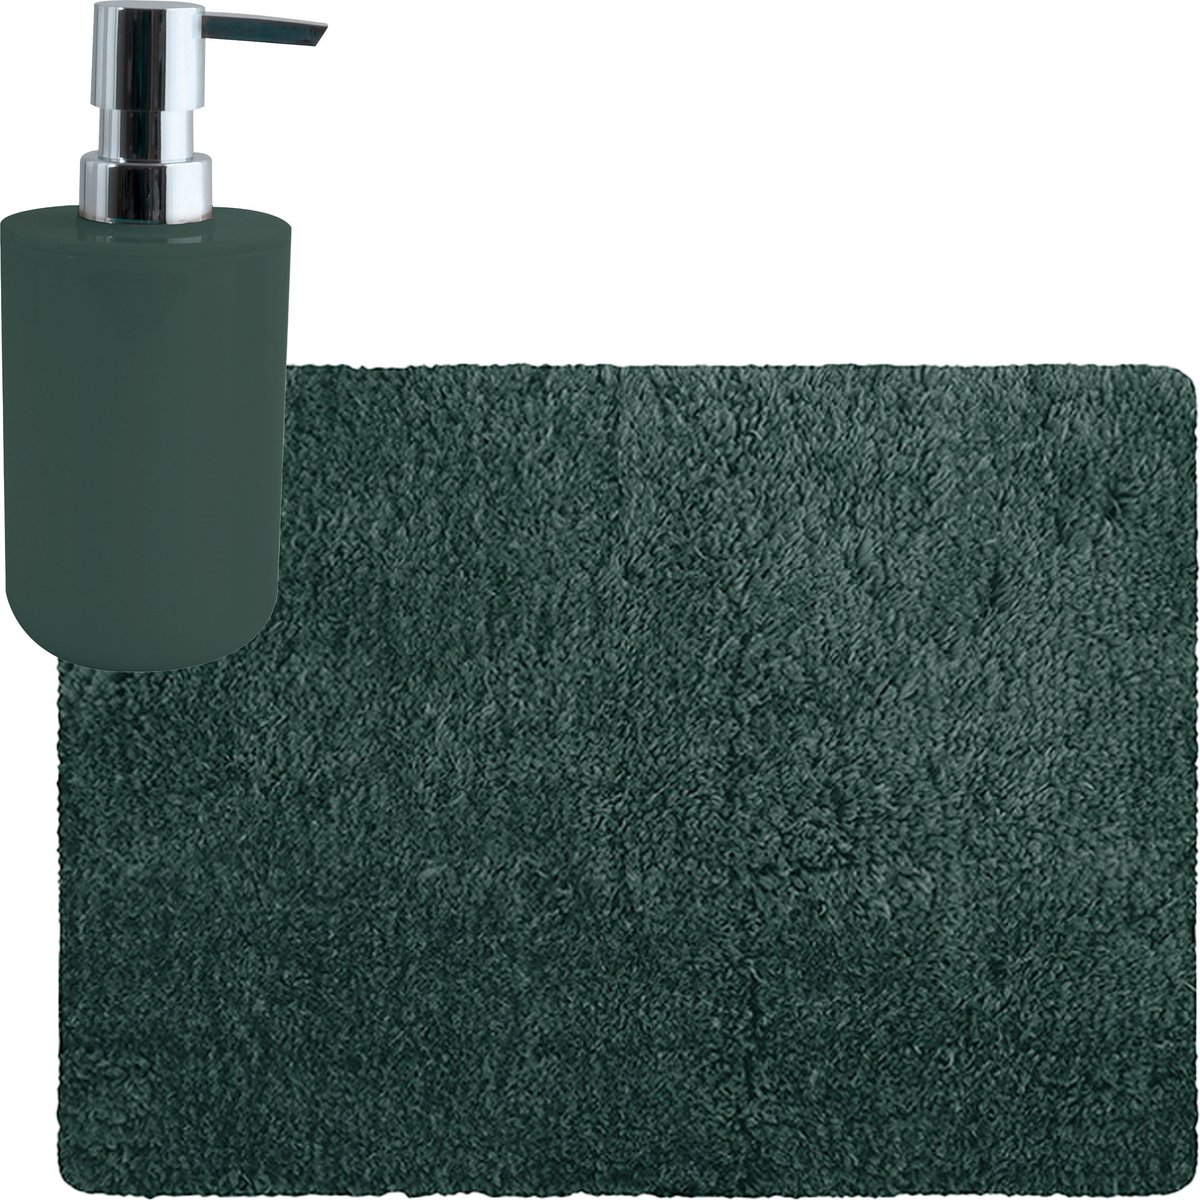 MSV badkamer droogloop tapijt matje Langharig 50 x 70 cm inclusief zeeppompje in dezelfde kleur donkergroen